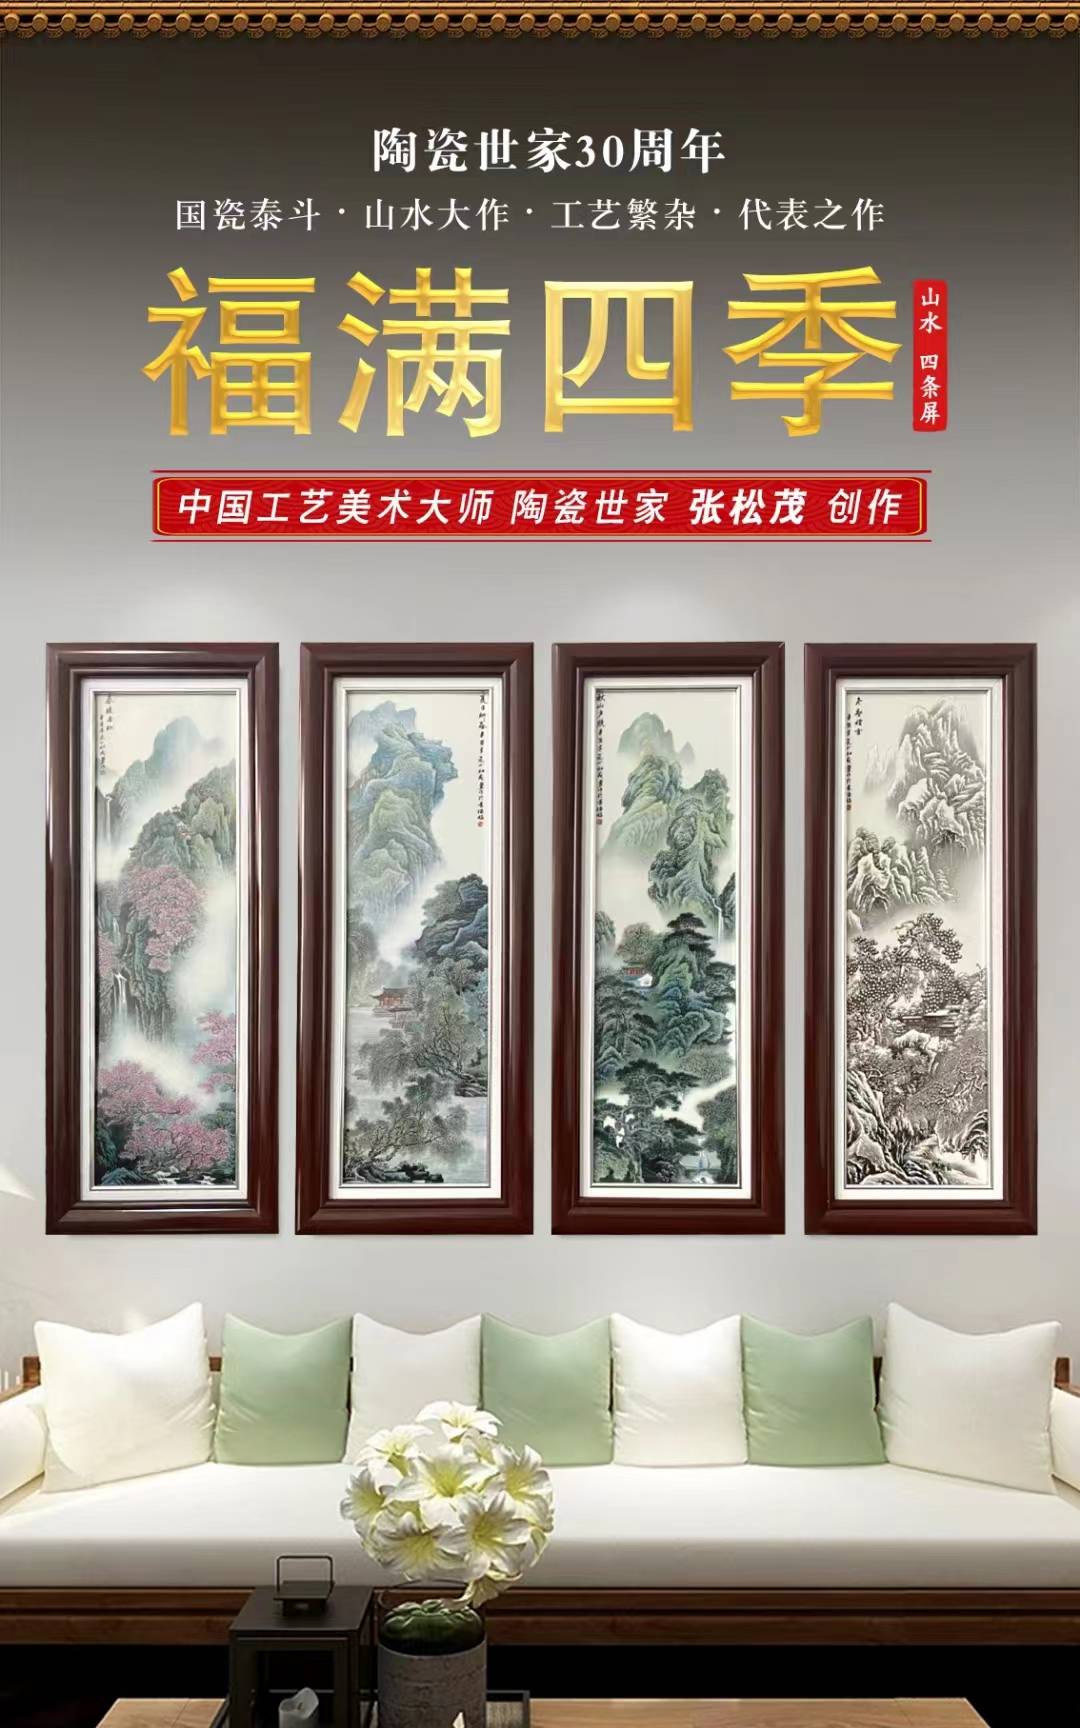 陶瓷世家张松茂创作 福满四季山水瓷板画四条屏